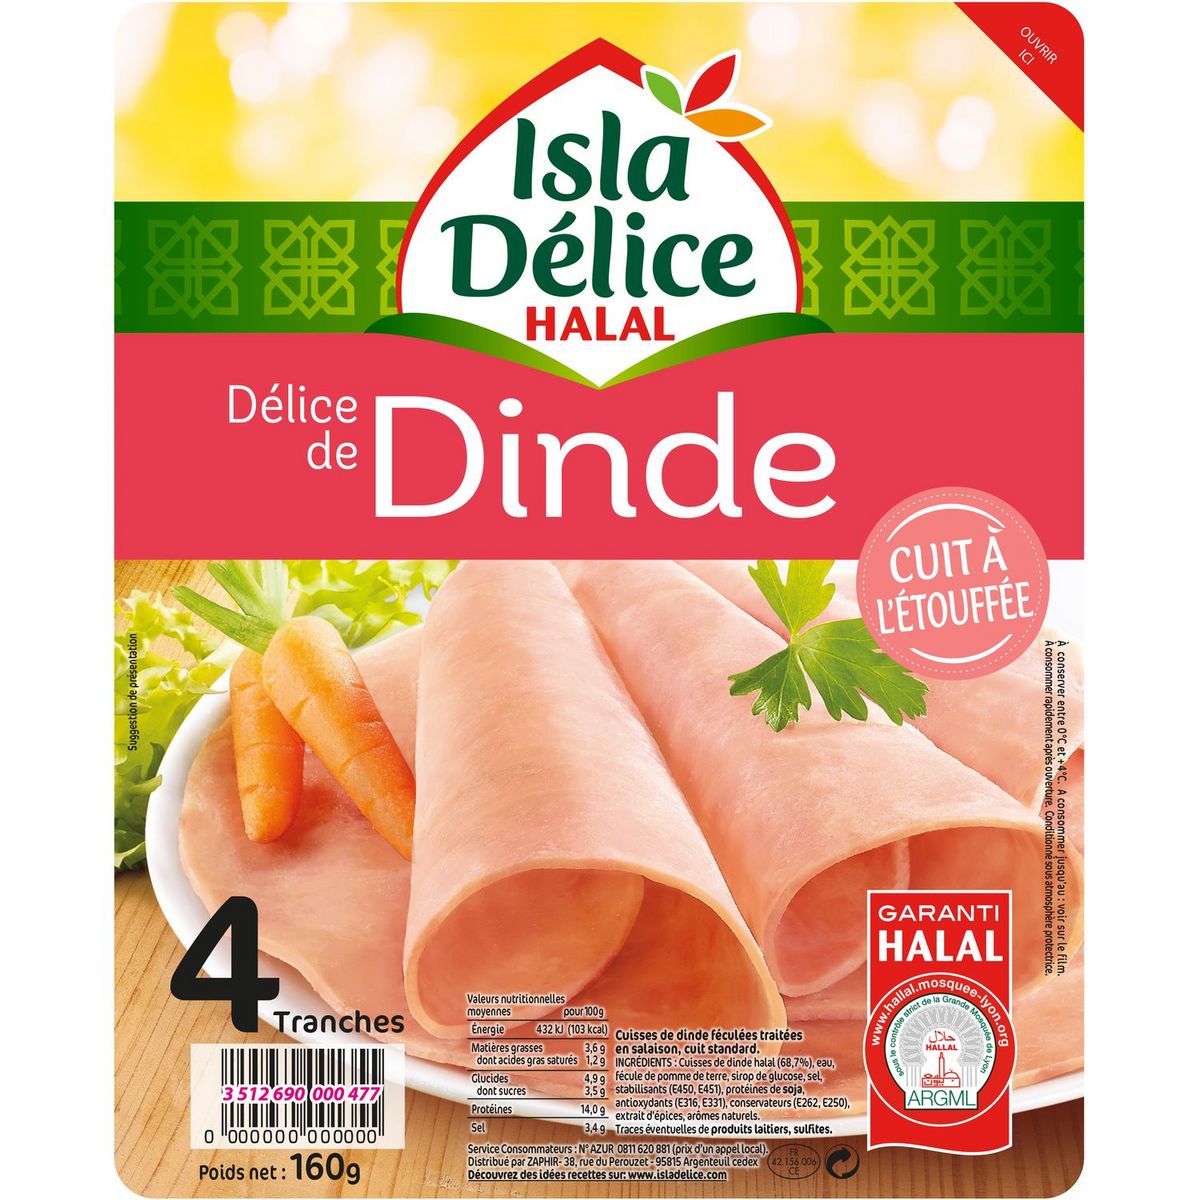 ISLA DELICE Délice de dinde cuit à l'étouffée halal 4 tranches 160g